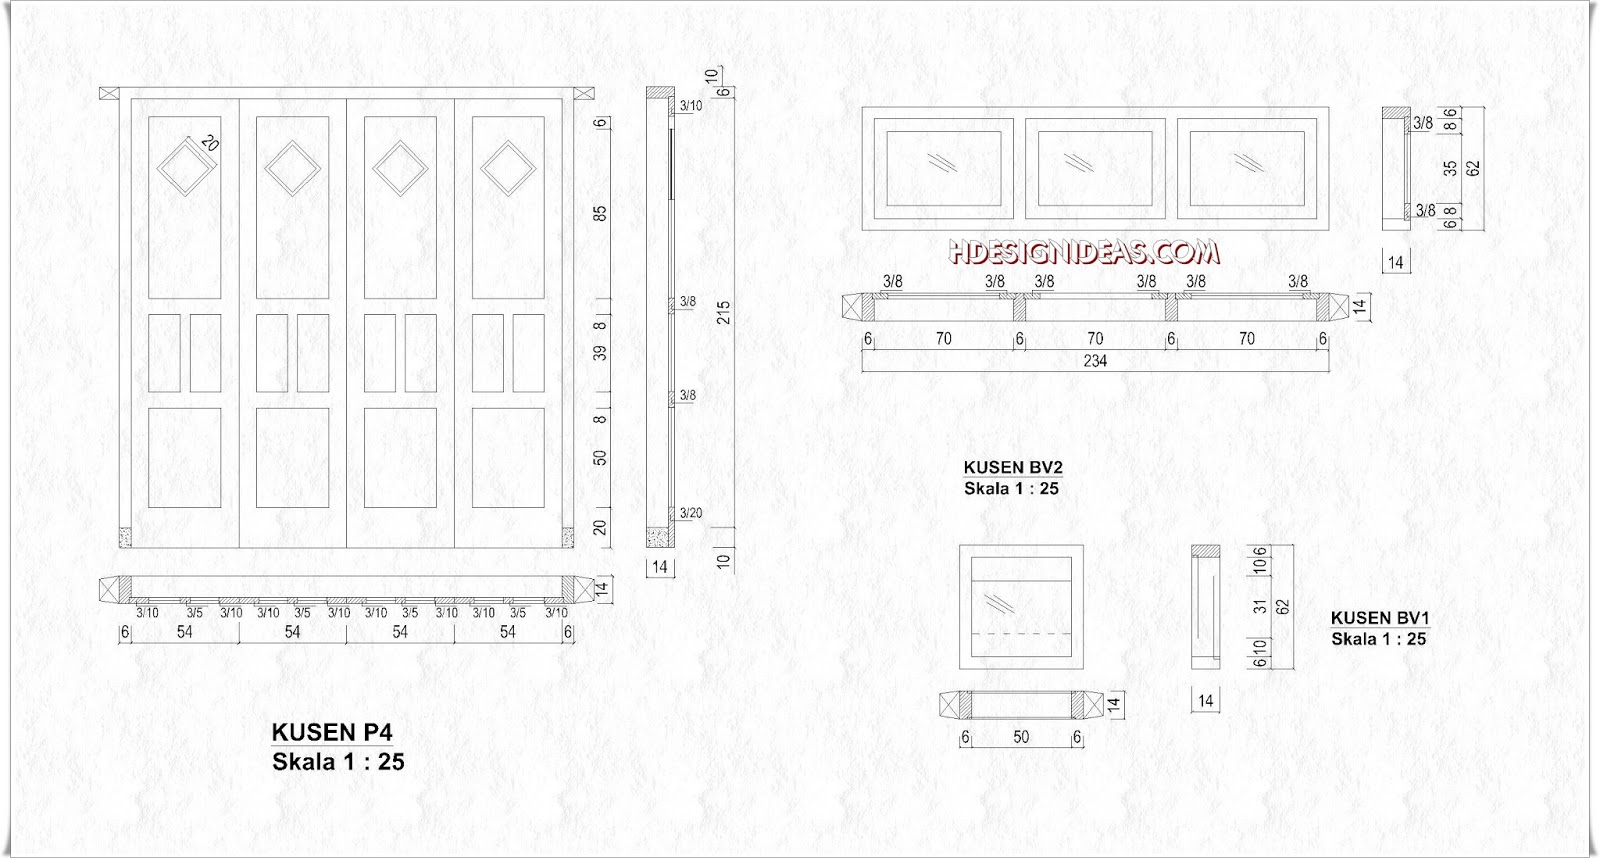 Denah Rumah Tinggal Ukuran 8 m x 8,5 m  Home Design and Ideas